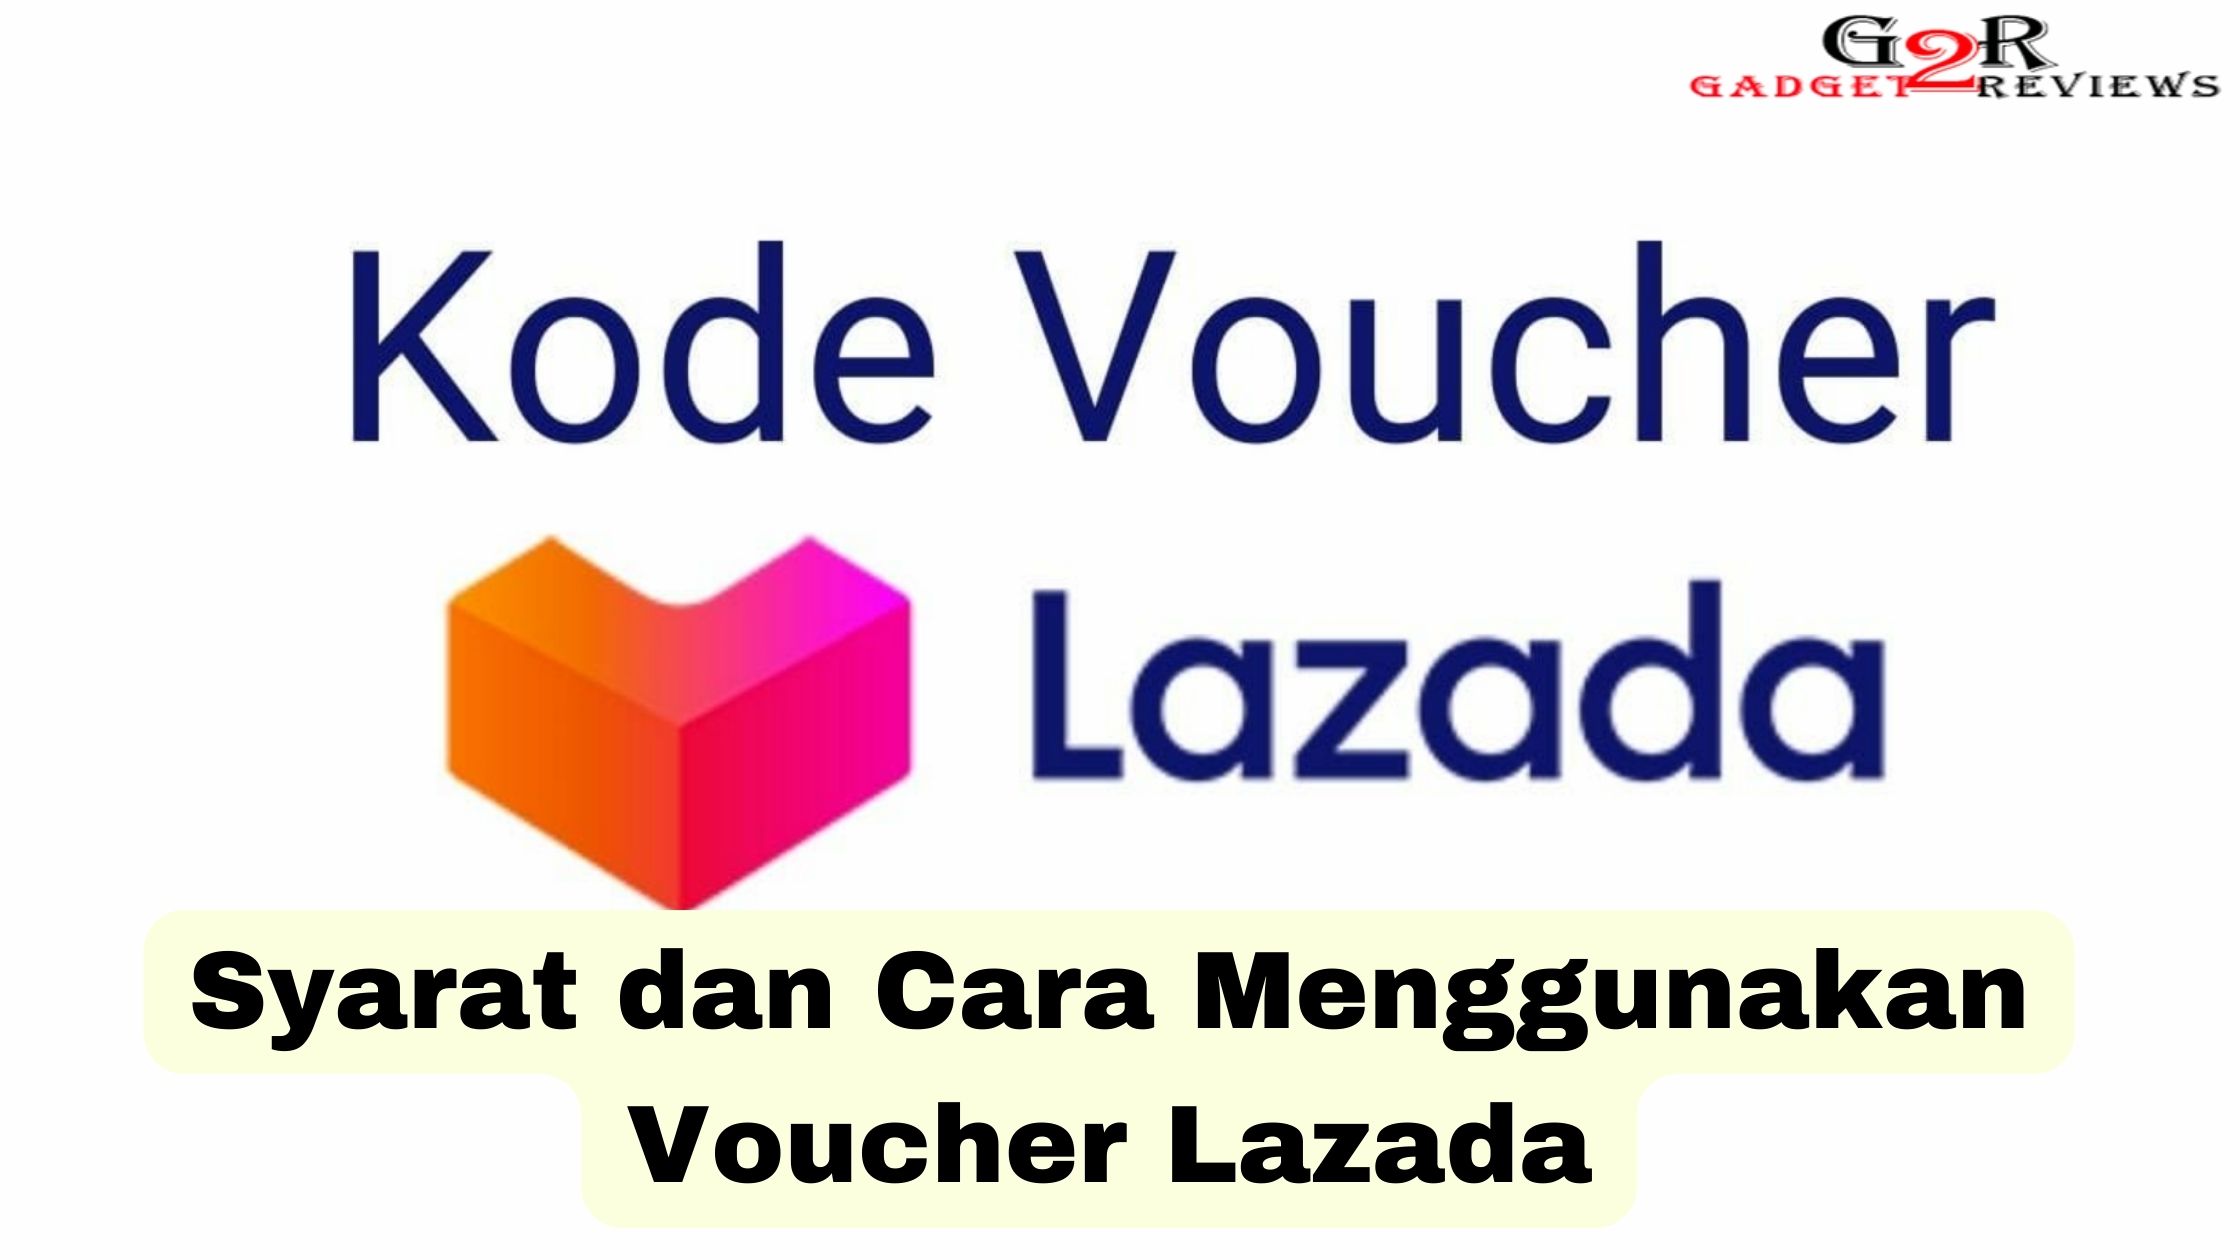 Syarat dan Cara Menggunakan Voucher Lazada